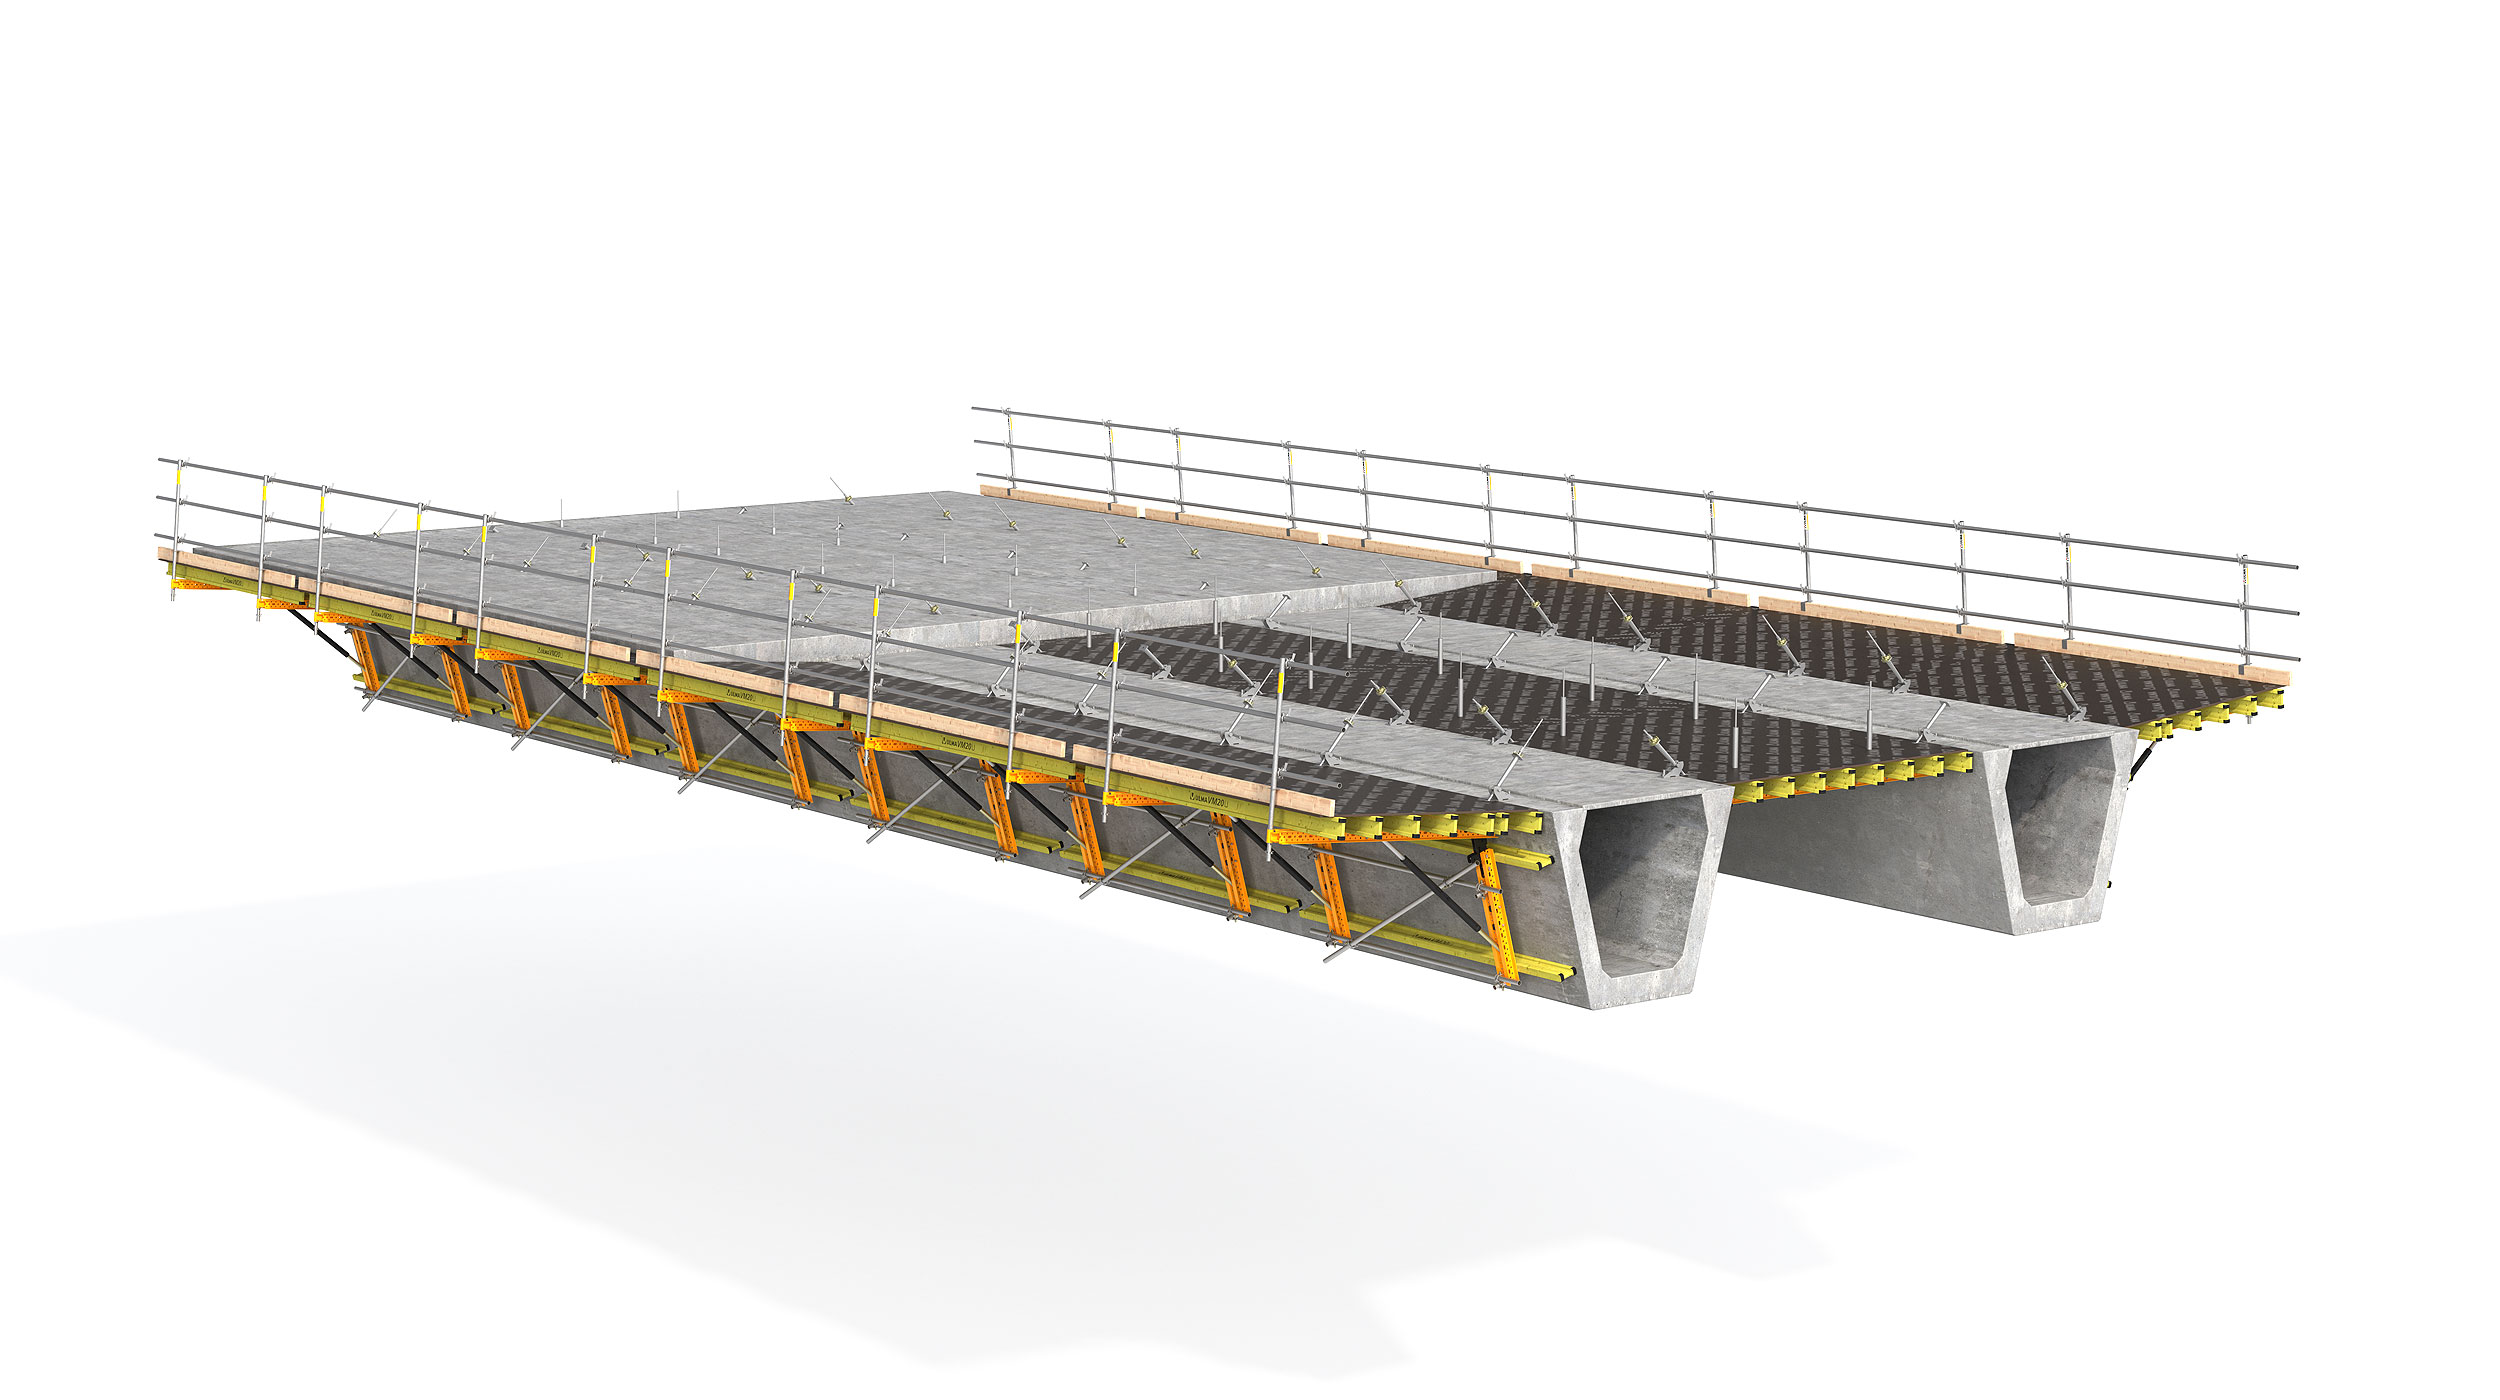 Encofrado modular para hormigonar las alas o losa central de puentes con núcleo metálico u hormigón prefabricado. Característica destacable: la seguridad del sistema.